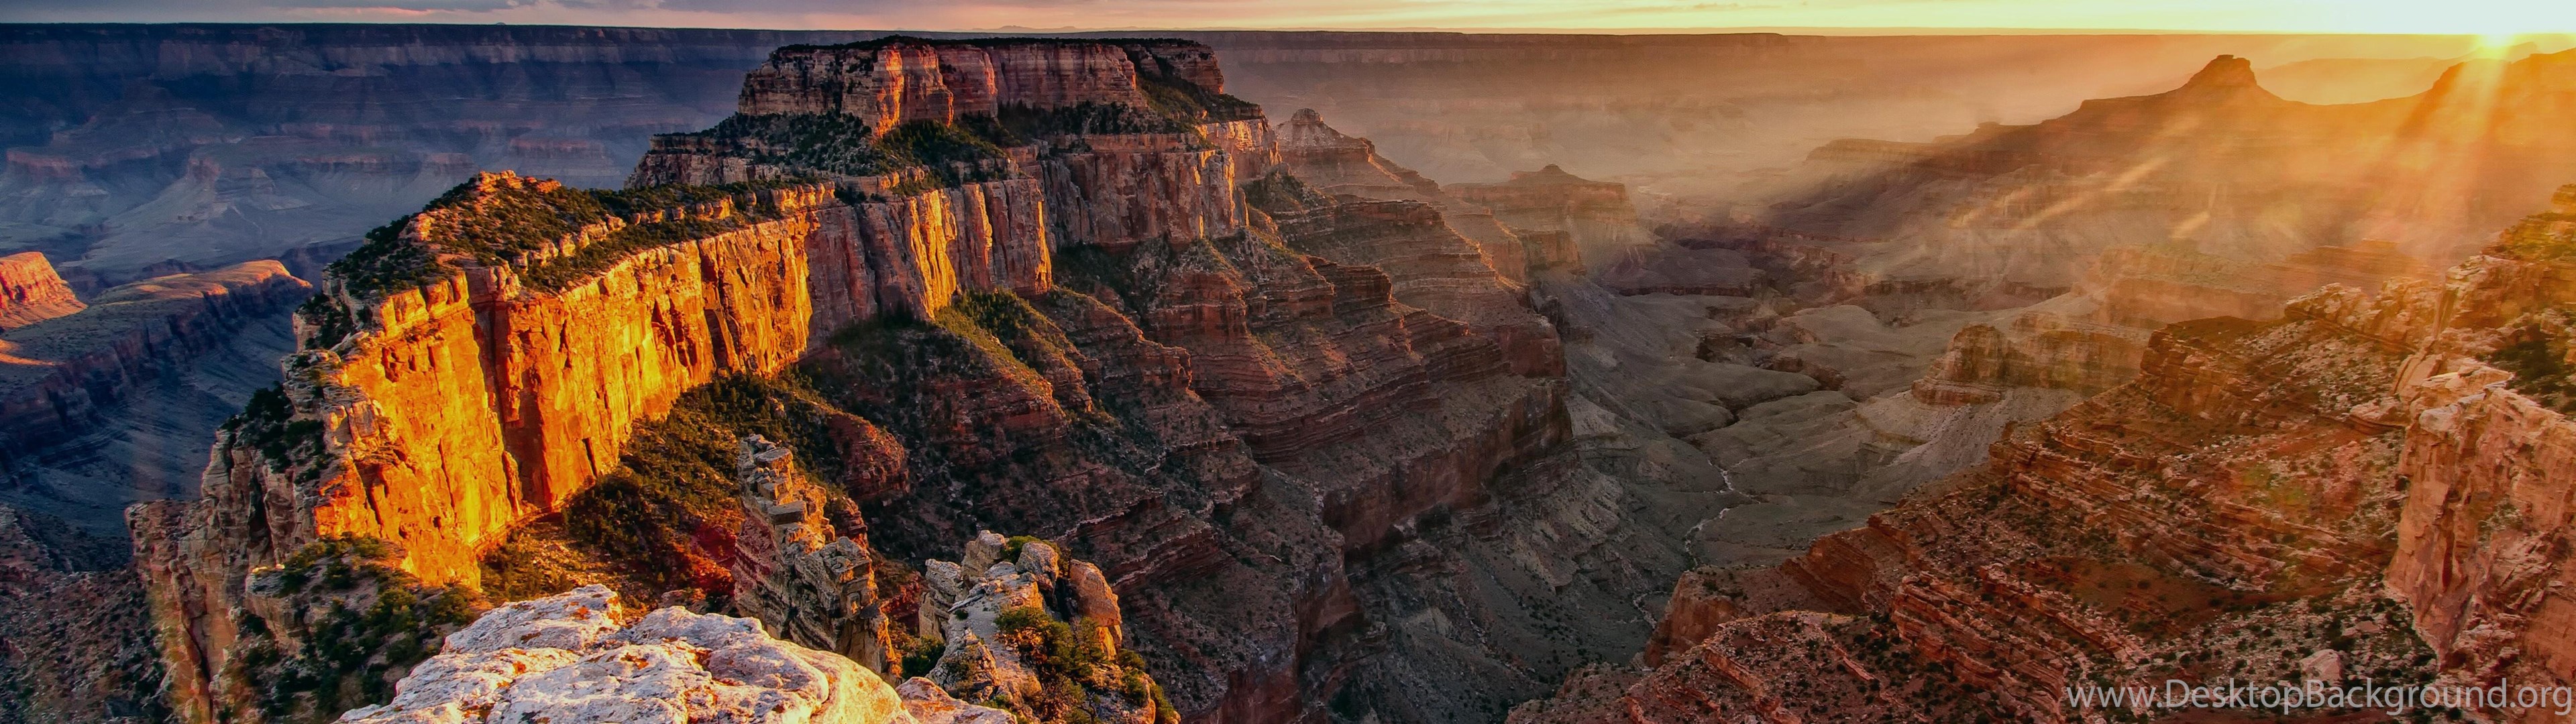 Hình nền Grand Canyon đôi sẽ đưa bạn đến với vùng đất kỳ vĩ với những dãy núi đá, hang động và sự phối trộn màu sắc hoàn hảo của thiên nhiên. Hãy cùng ngắm nhìn những bức ảnh tuyệt đẹp của Grand Canyon để tận hưởng cảm giác được đắm mình vào vẻ đẹp tự nhiên.